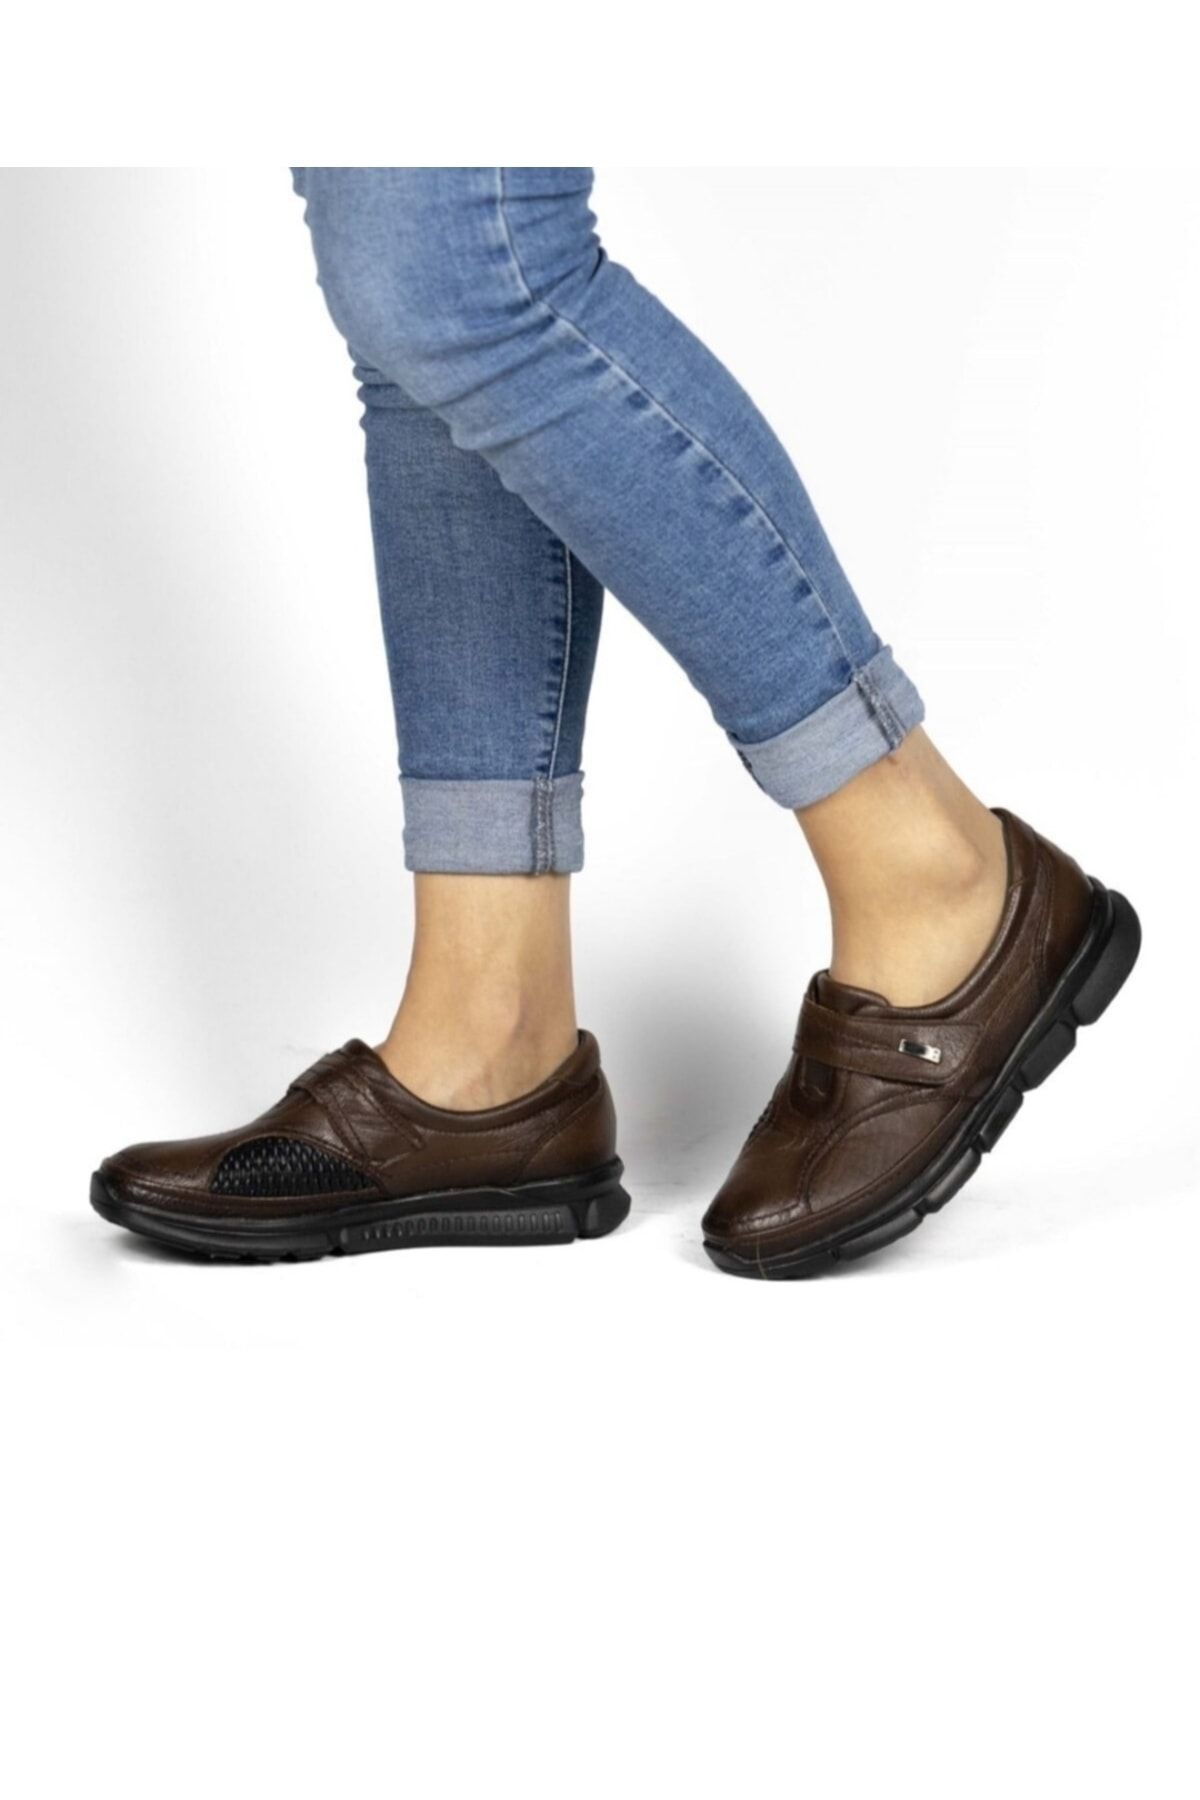 Belox Kadın Hakiki Deri Ortopedik Kahverengi Kemik Çıkıntısı Ayakkabısı